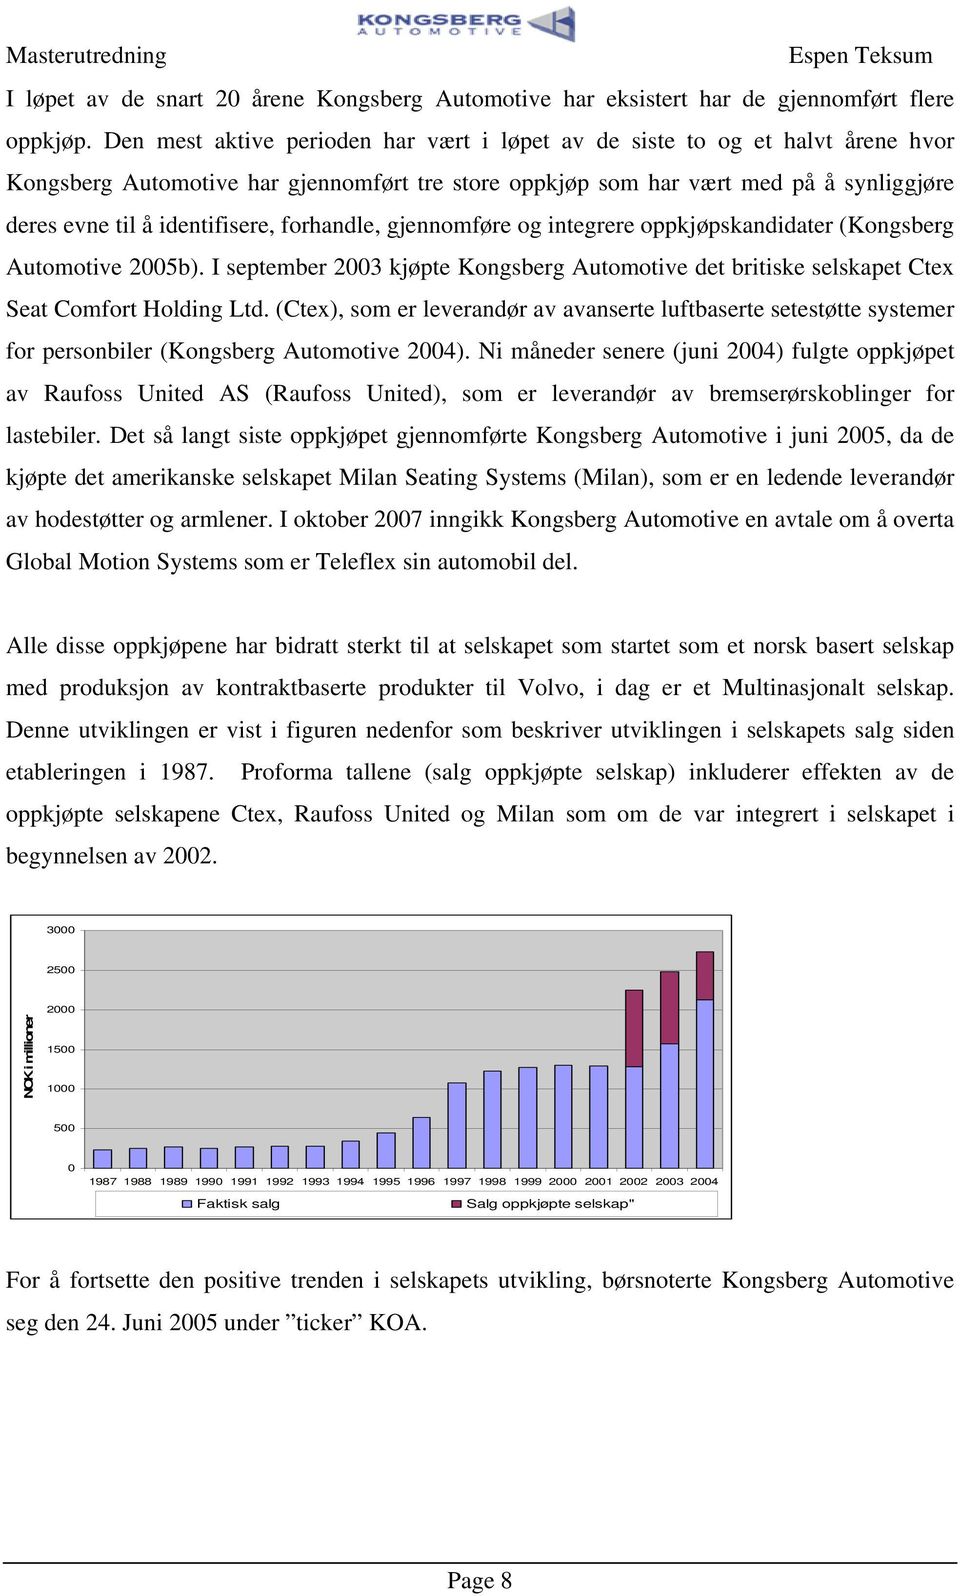 gjennomføre og inegrere oppkjøpskandidaer (Kongsberg Auomoive 2005b). I sepember 2003 kjøpe Kongsberg Auomoive de briiske selskape Cex Sea Comfor Holding Ld.